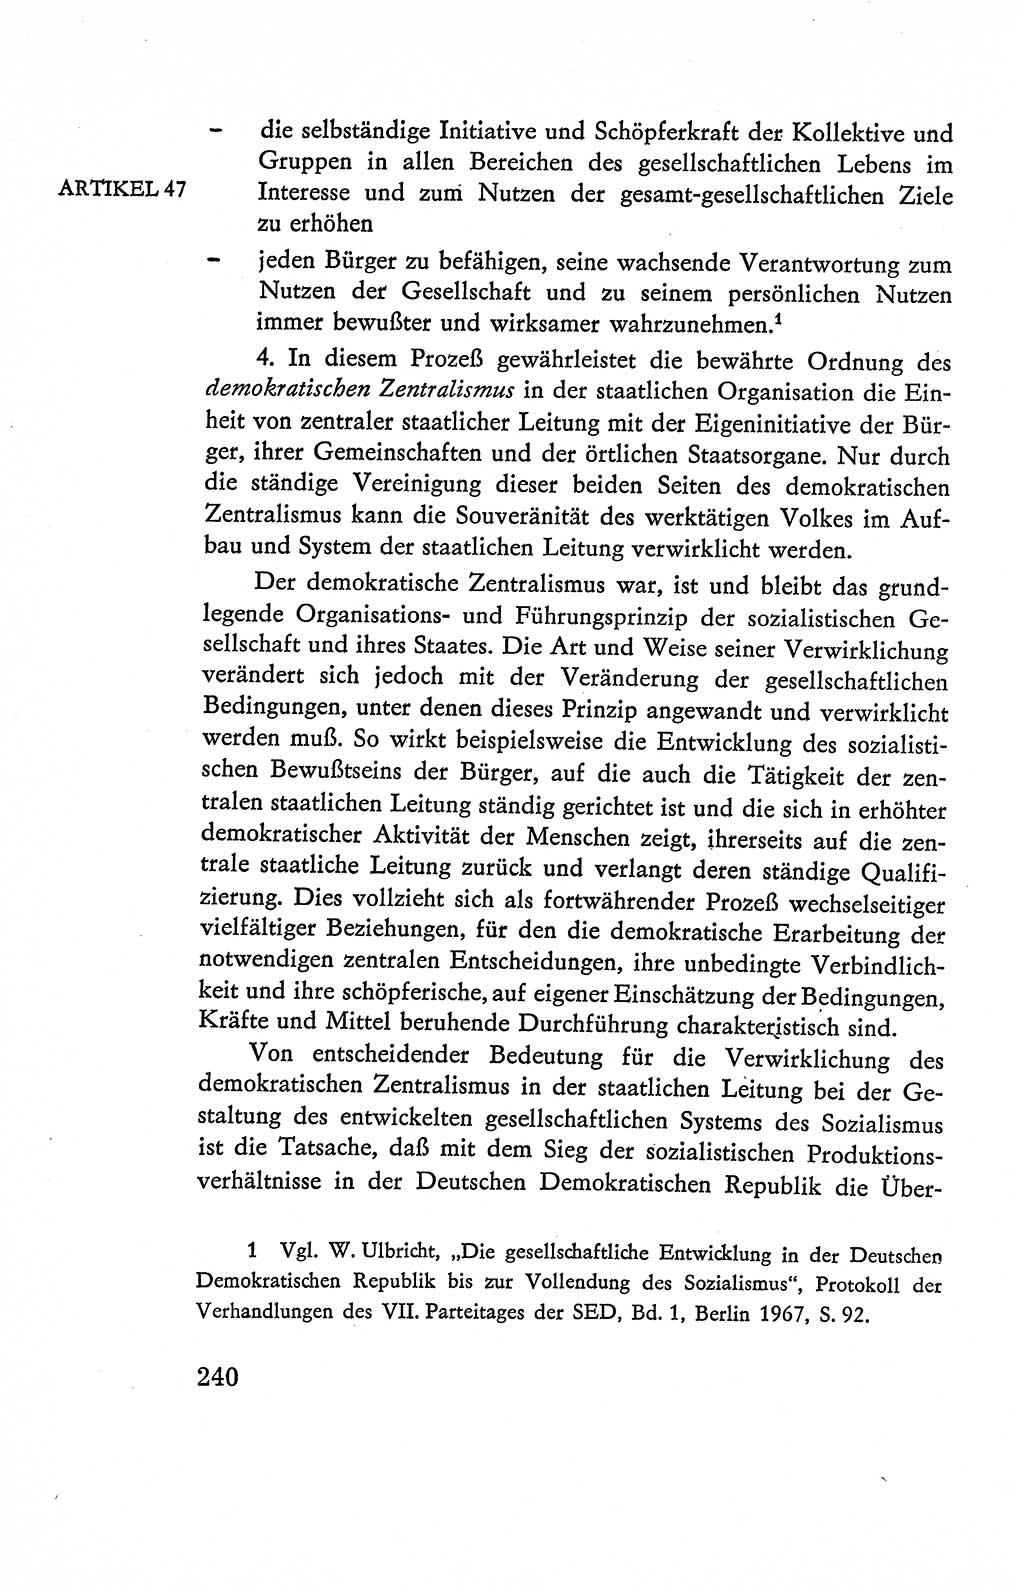 Verfassung der Deutschen Demokratischen Republik (DDR), Dokumente, Kommentar 1969, Band 2, Seite 240 (Verf. DDR Dok. Komm. 1969, Bd. 2, S. 240)